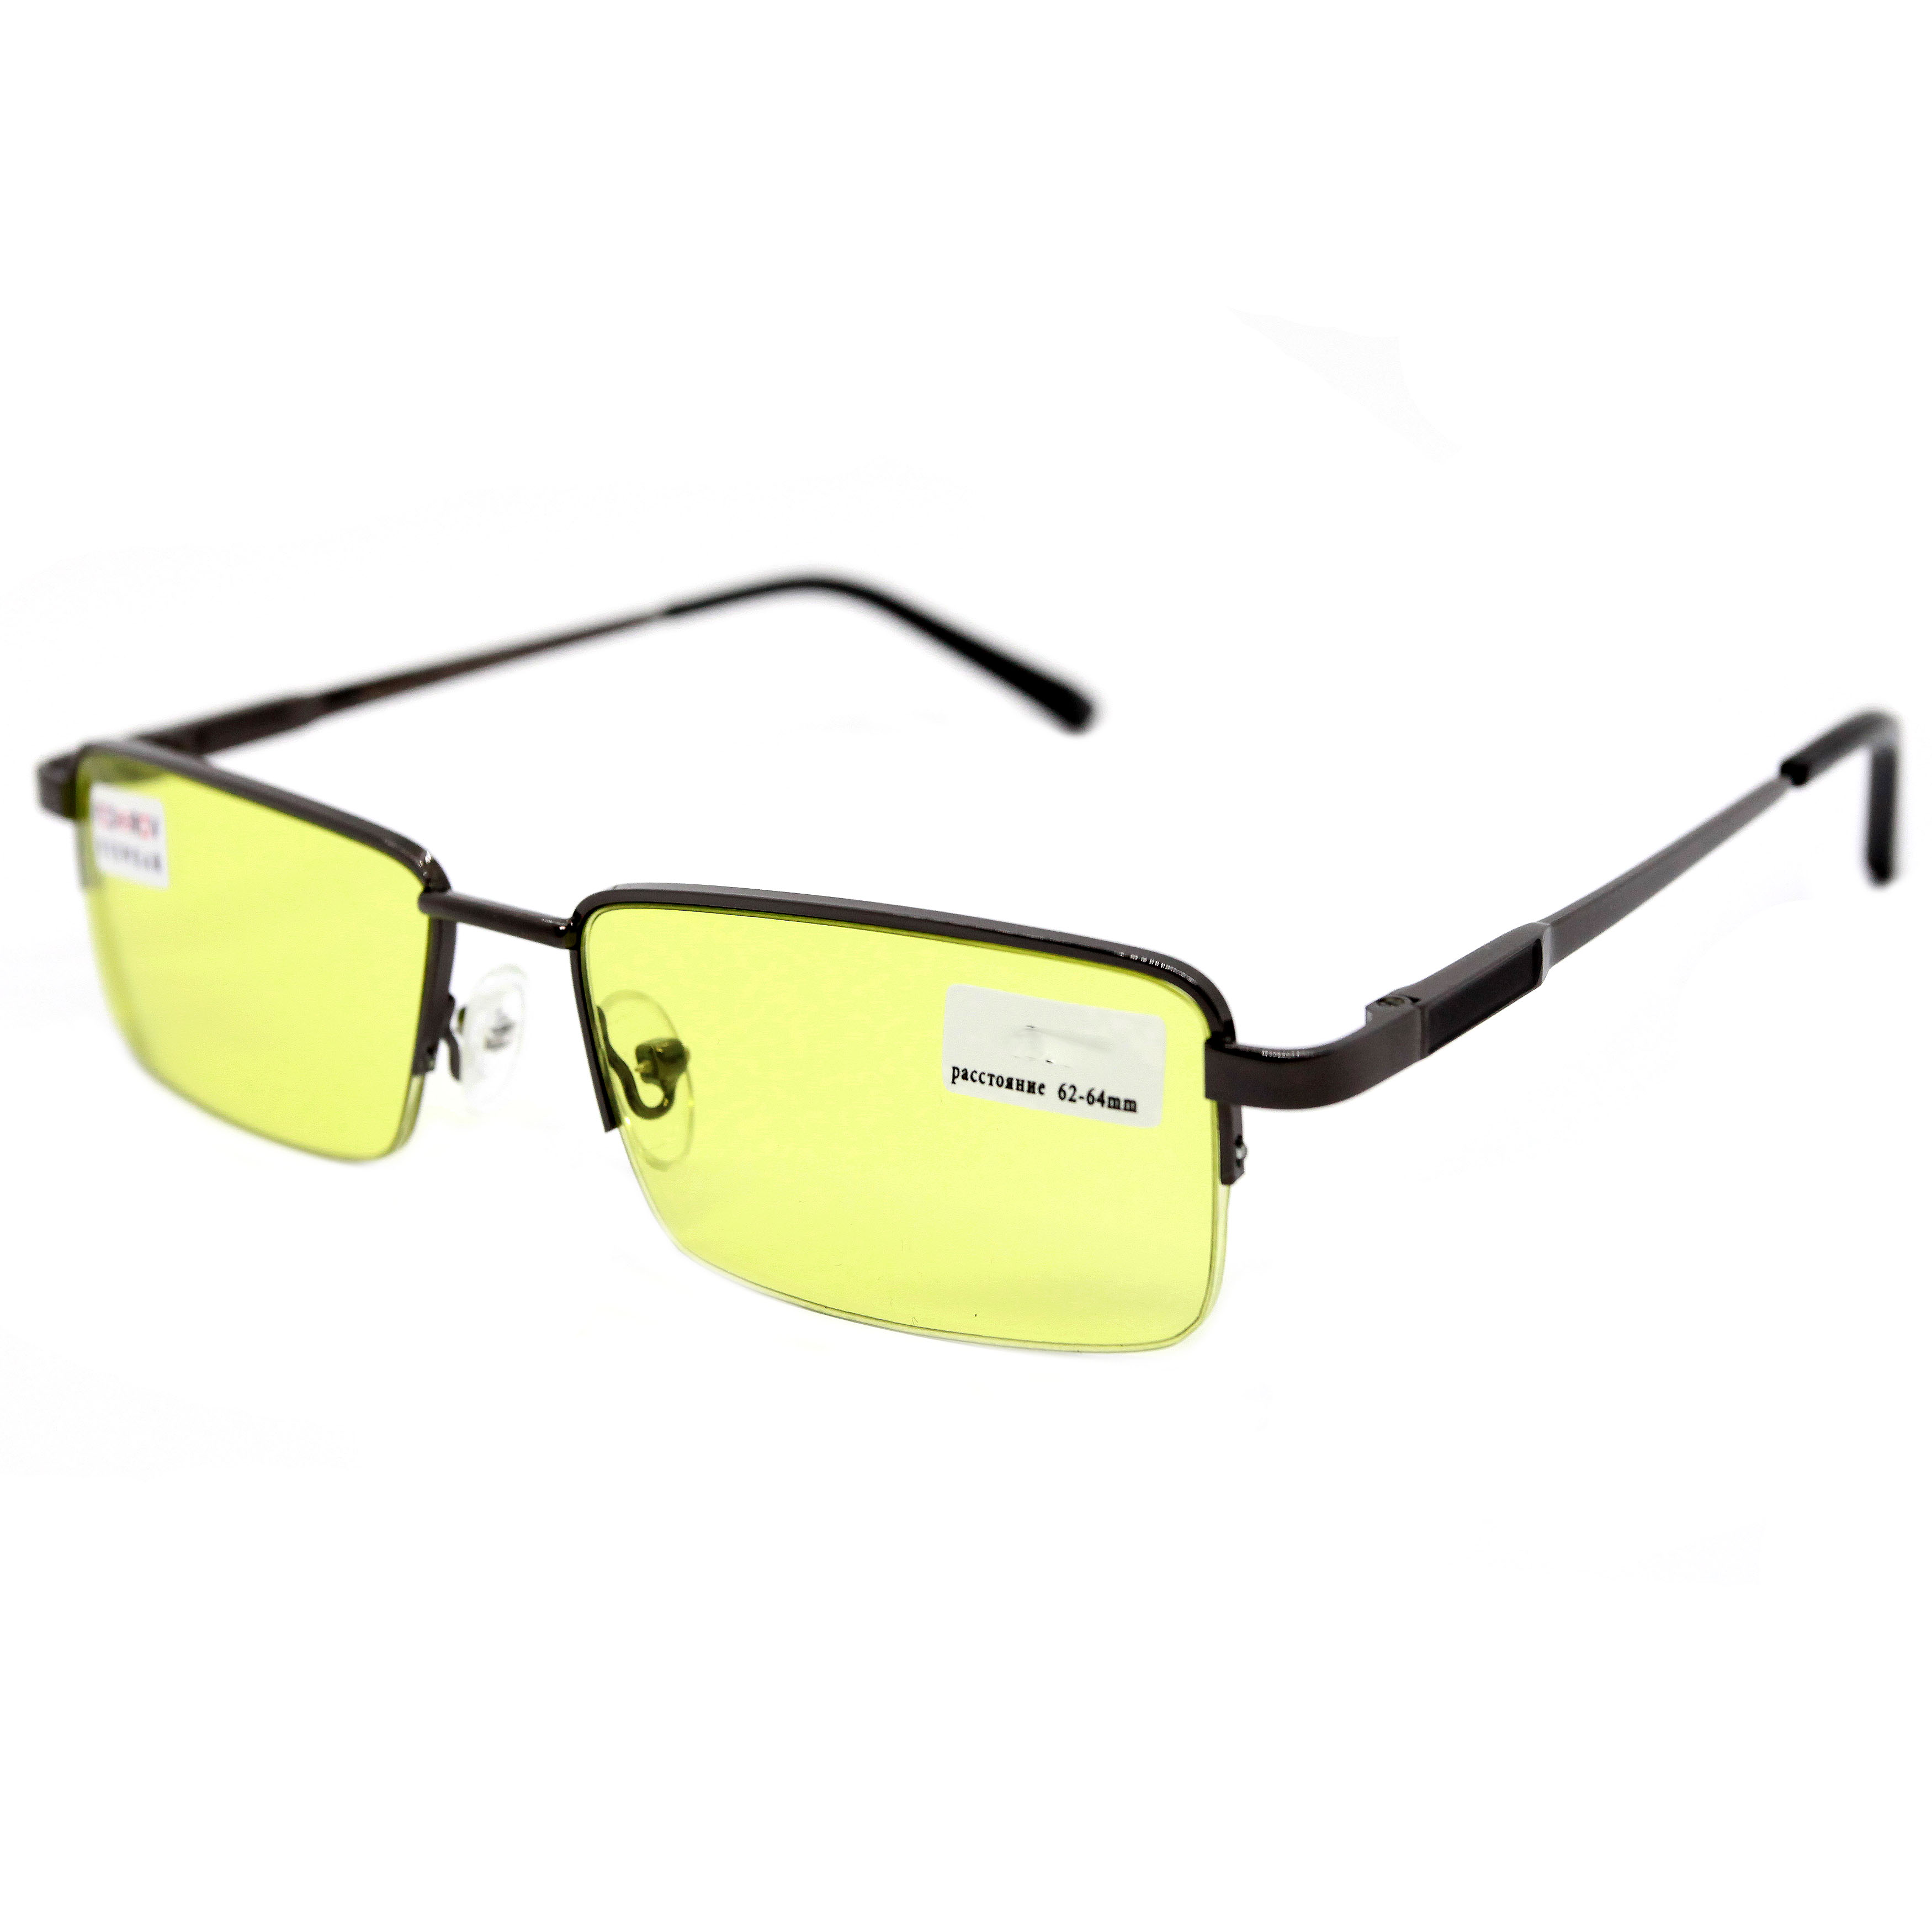 Готовые очки для зрения Fedrov 088 -1,25, без футляра, антифара, черный, РЦ 62-64